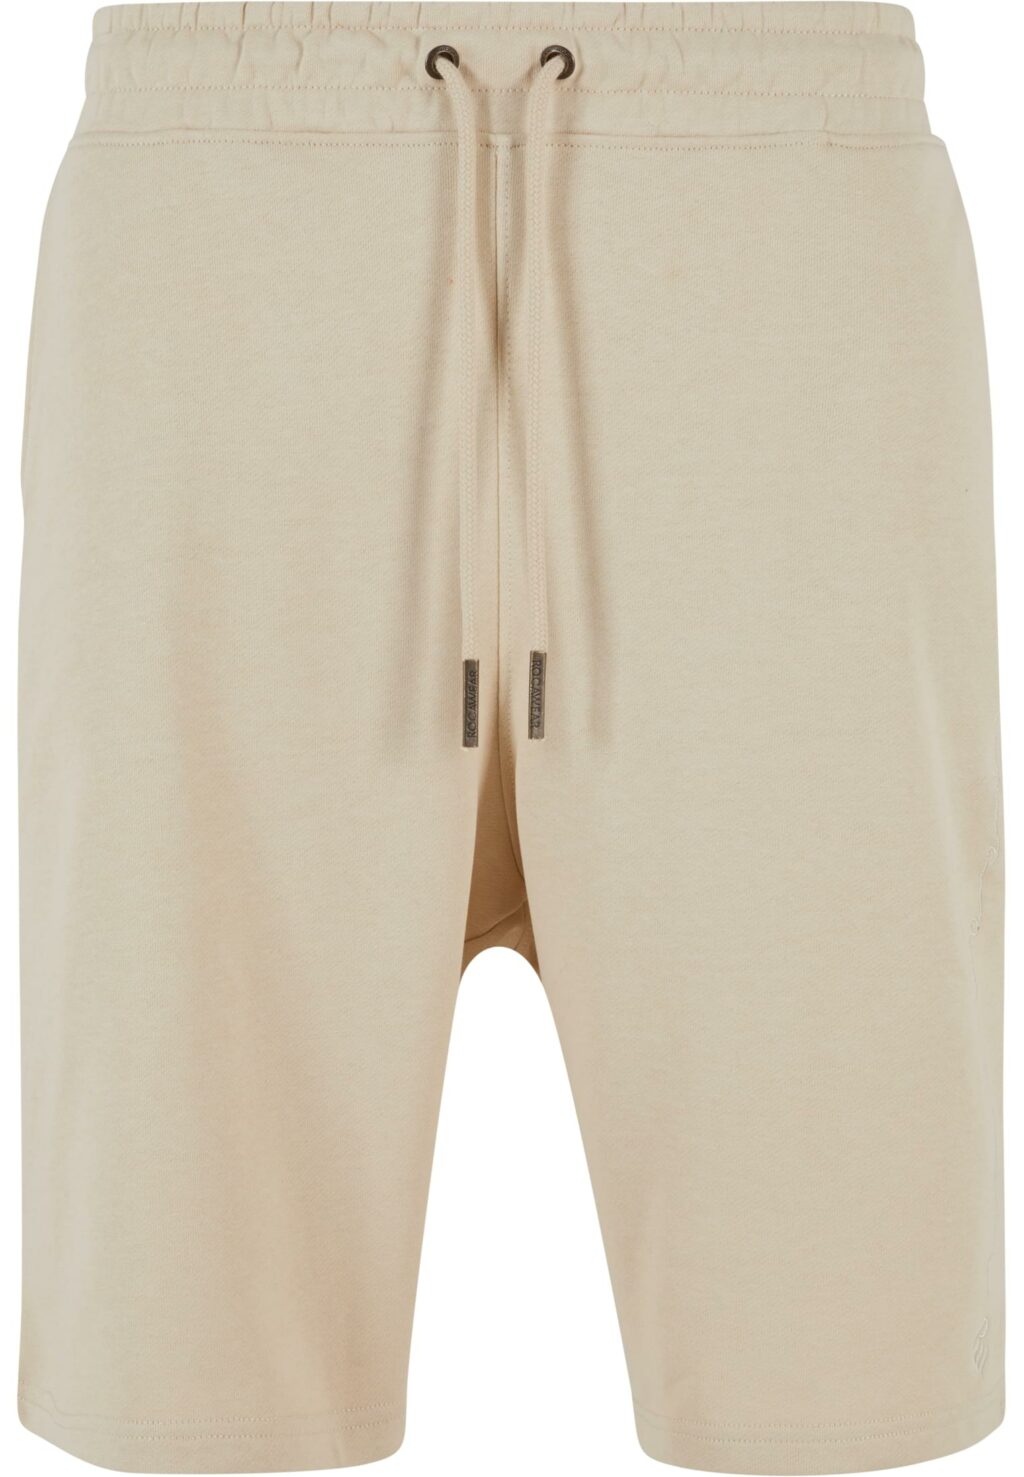 Rocawear Shorts Shorty beige RWSH020